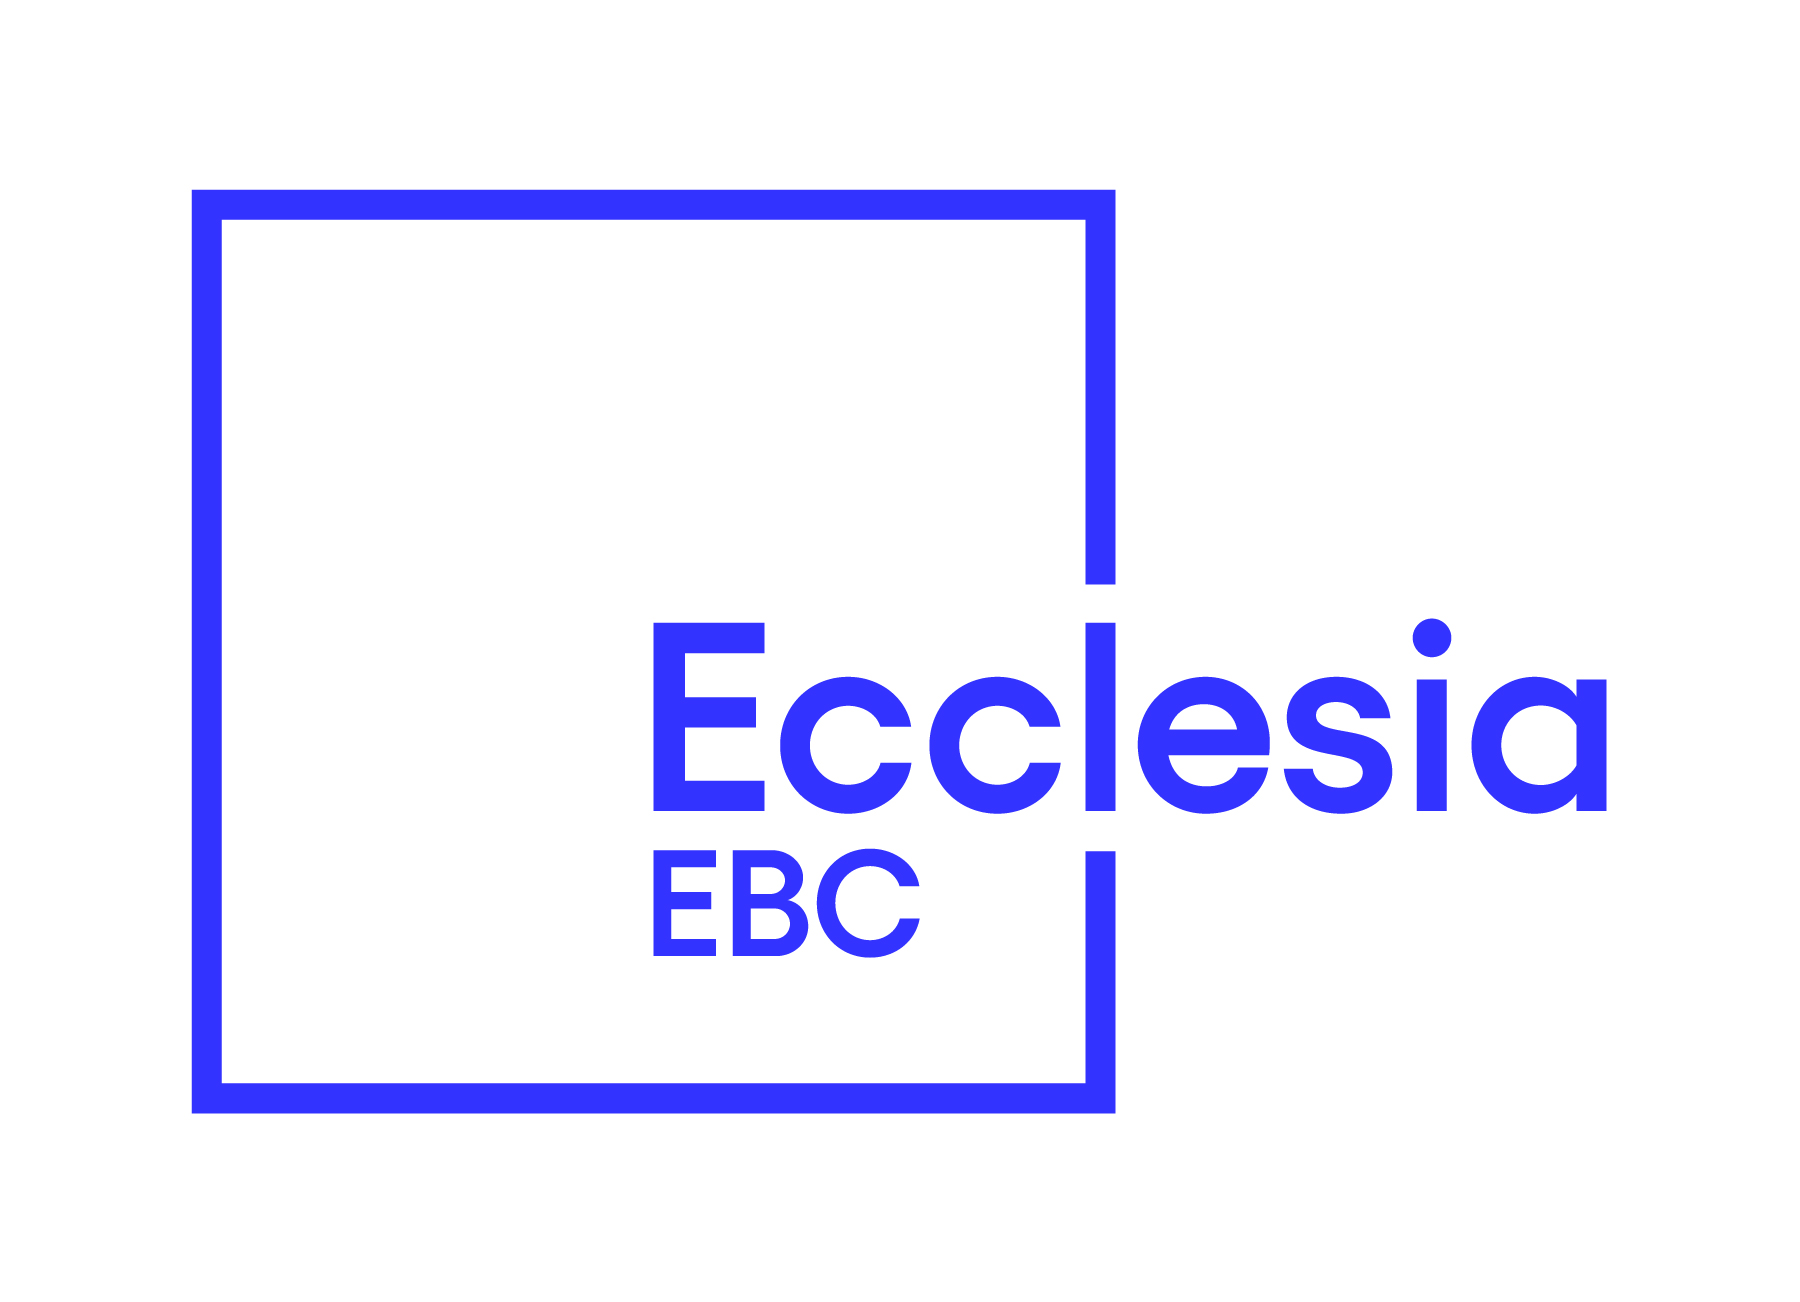 Ecclesia EBC